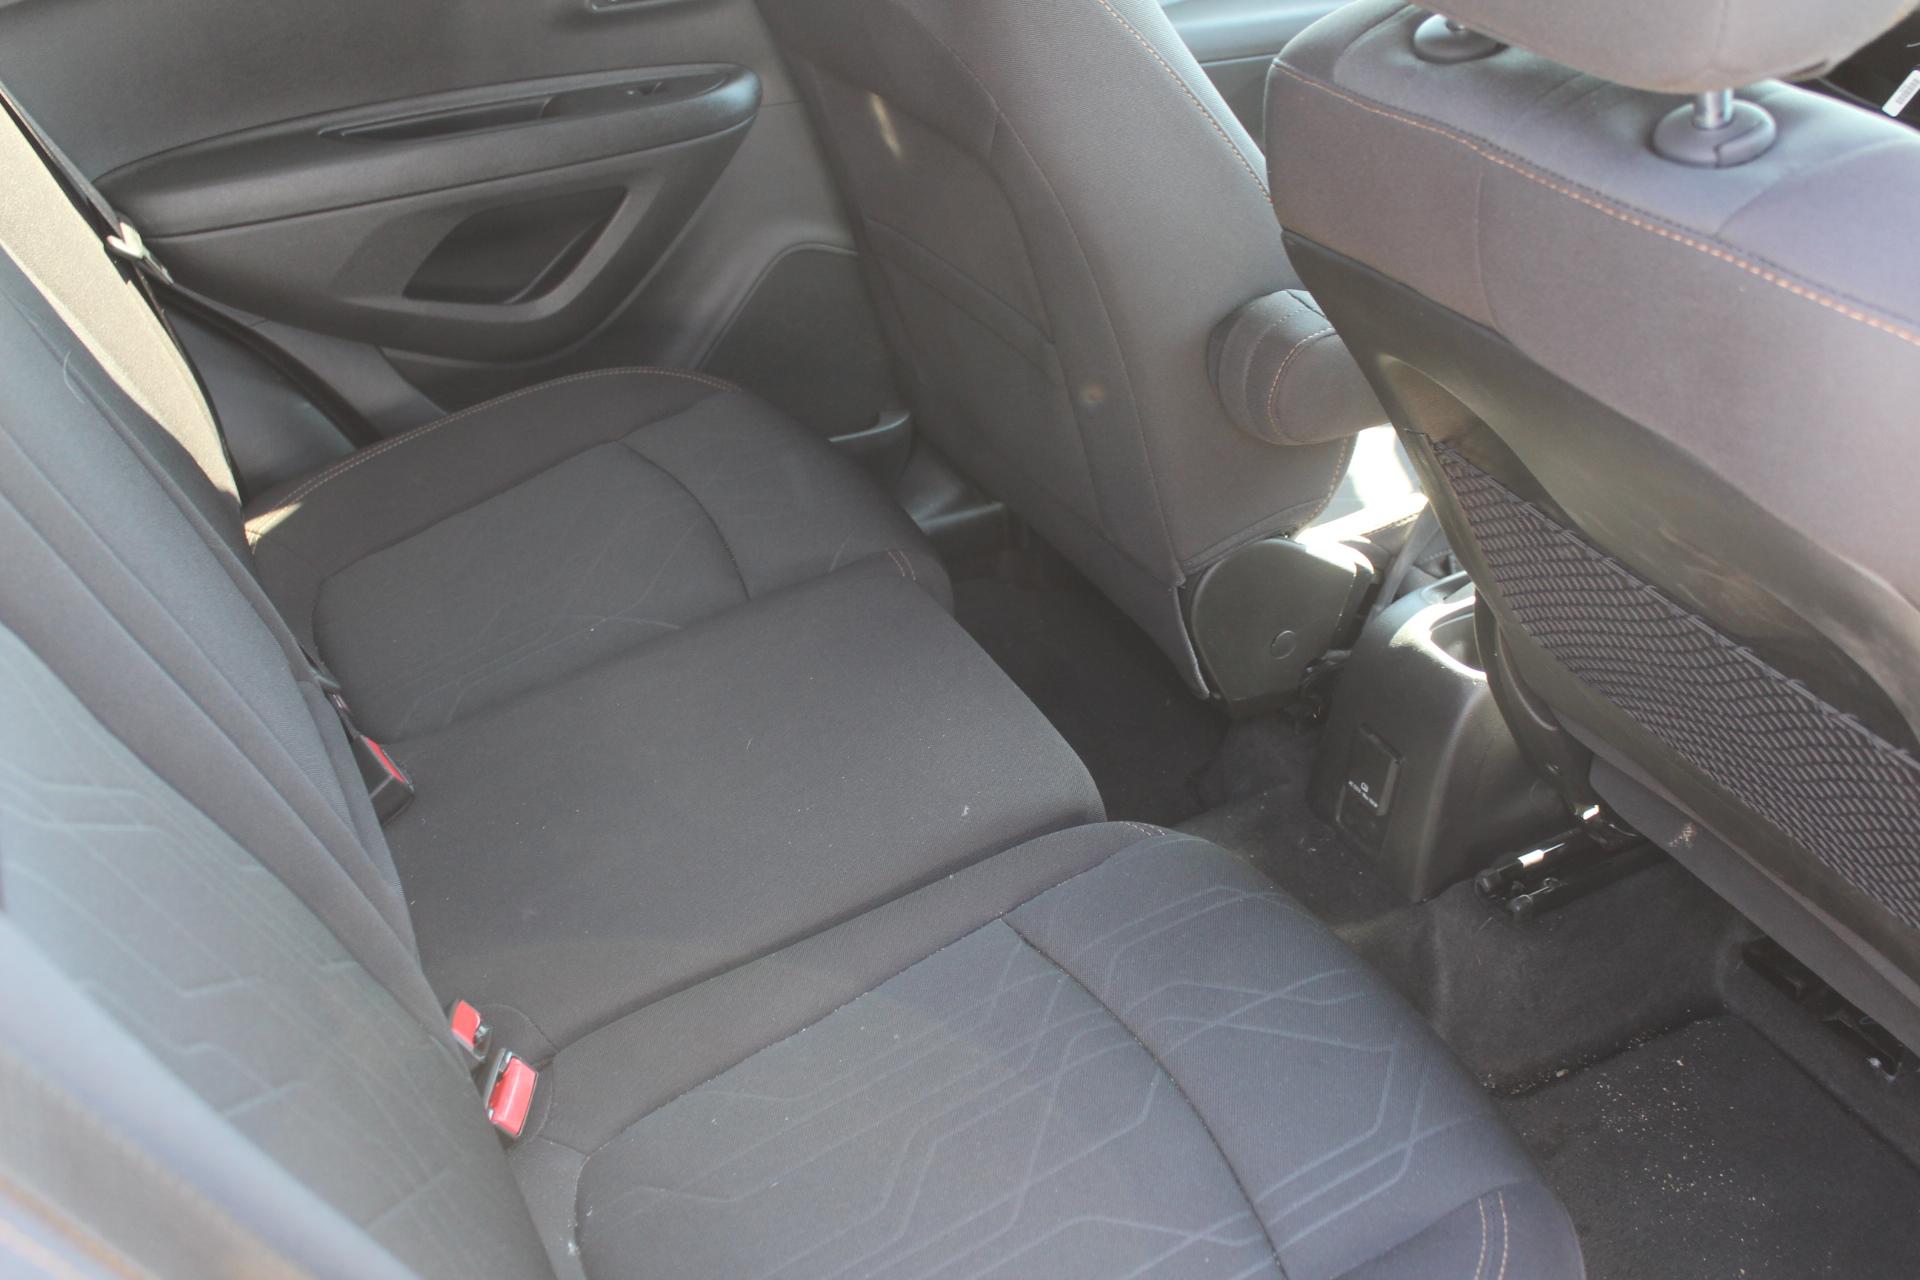 2019 Chevrolet Trax, EcoTec 1.4L, Auto Trans, PW/PL, Cloth Bucket Front Seats,